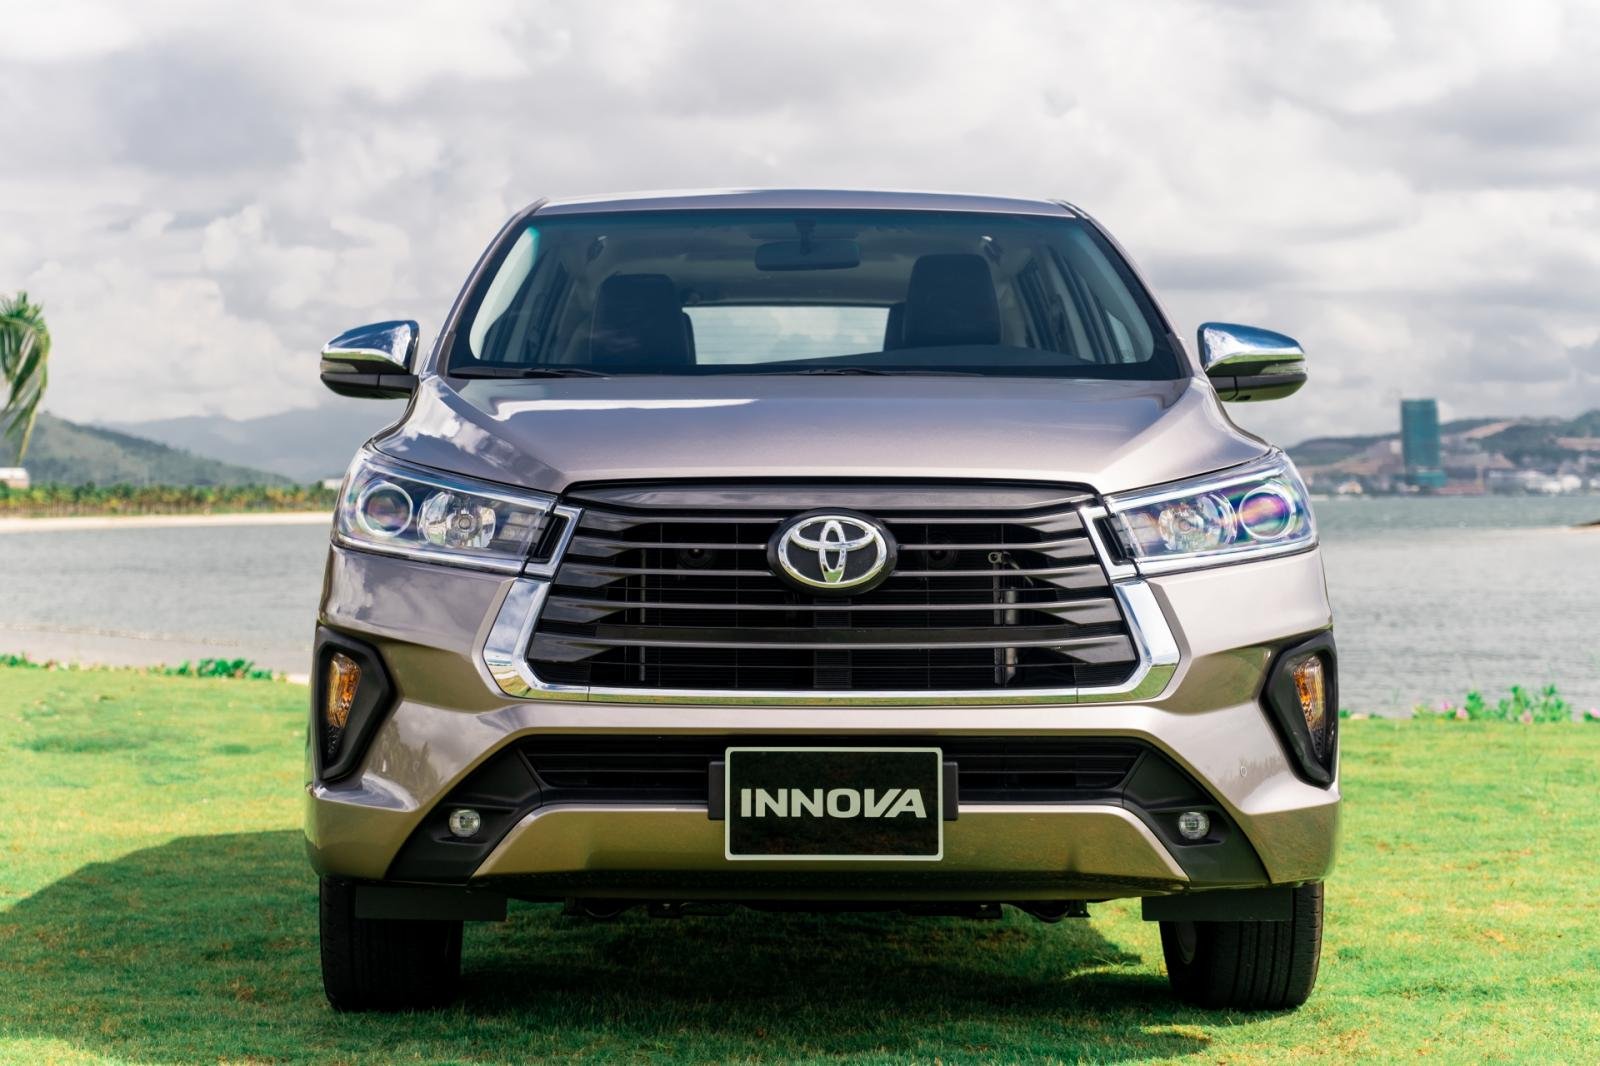 Chi phí “nuôi” Toyota Innova, xăng xe khiến người Việt “đau đầu” - Ảnh 4.